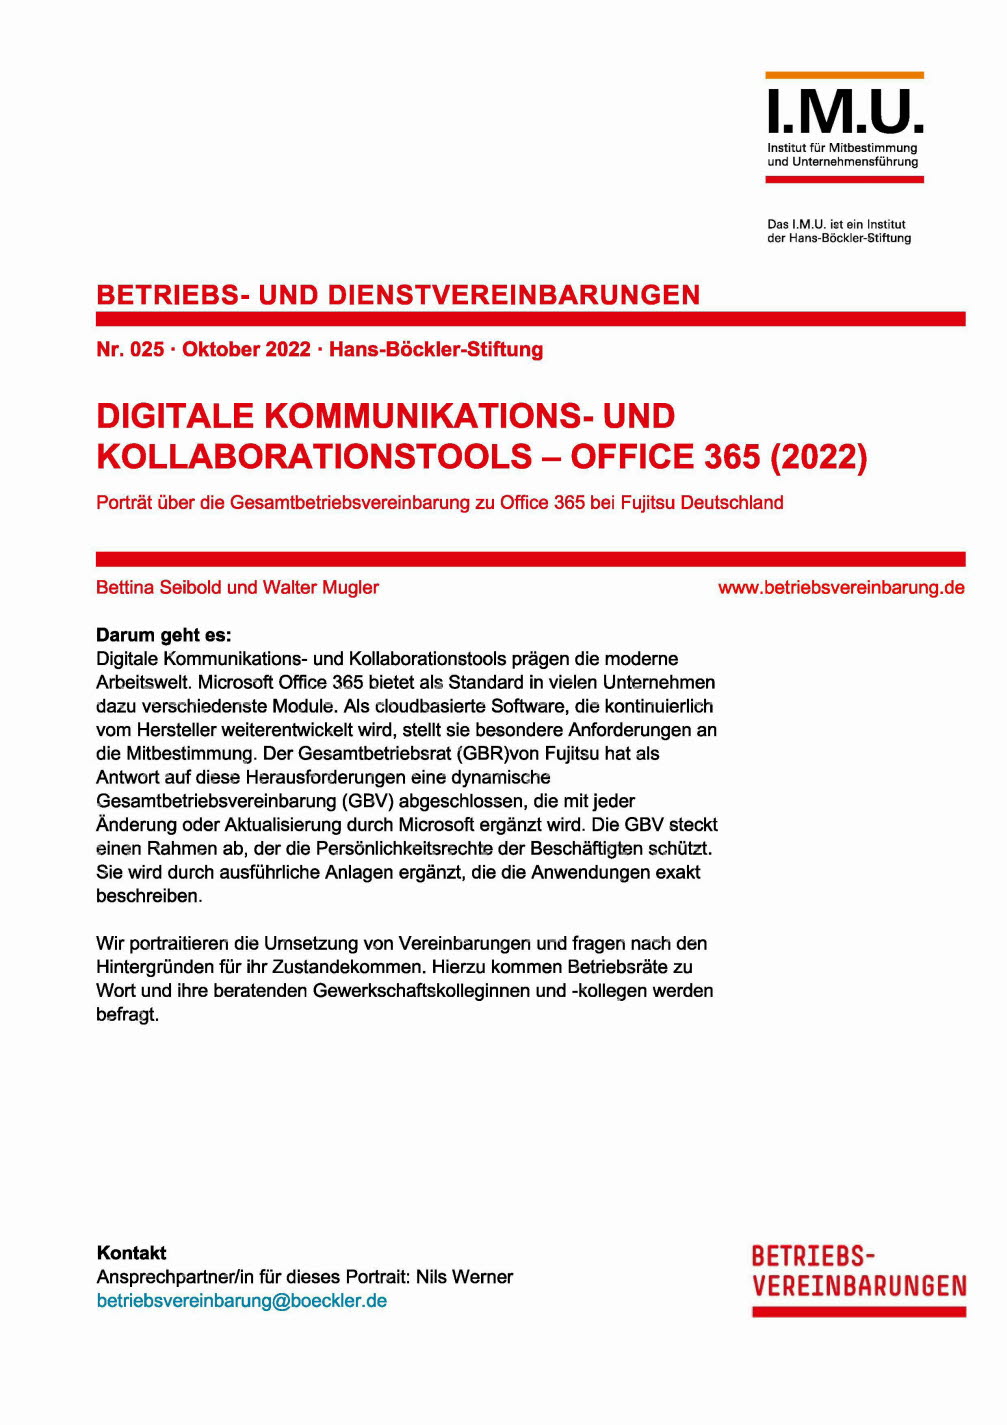 Digitale Kommunikations- und Kollaborationstools - Office 365 (2022)